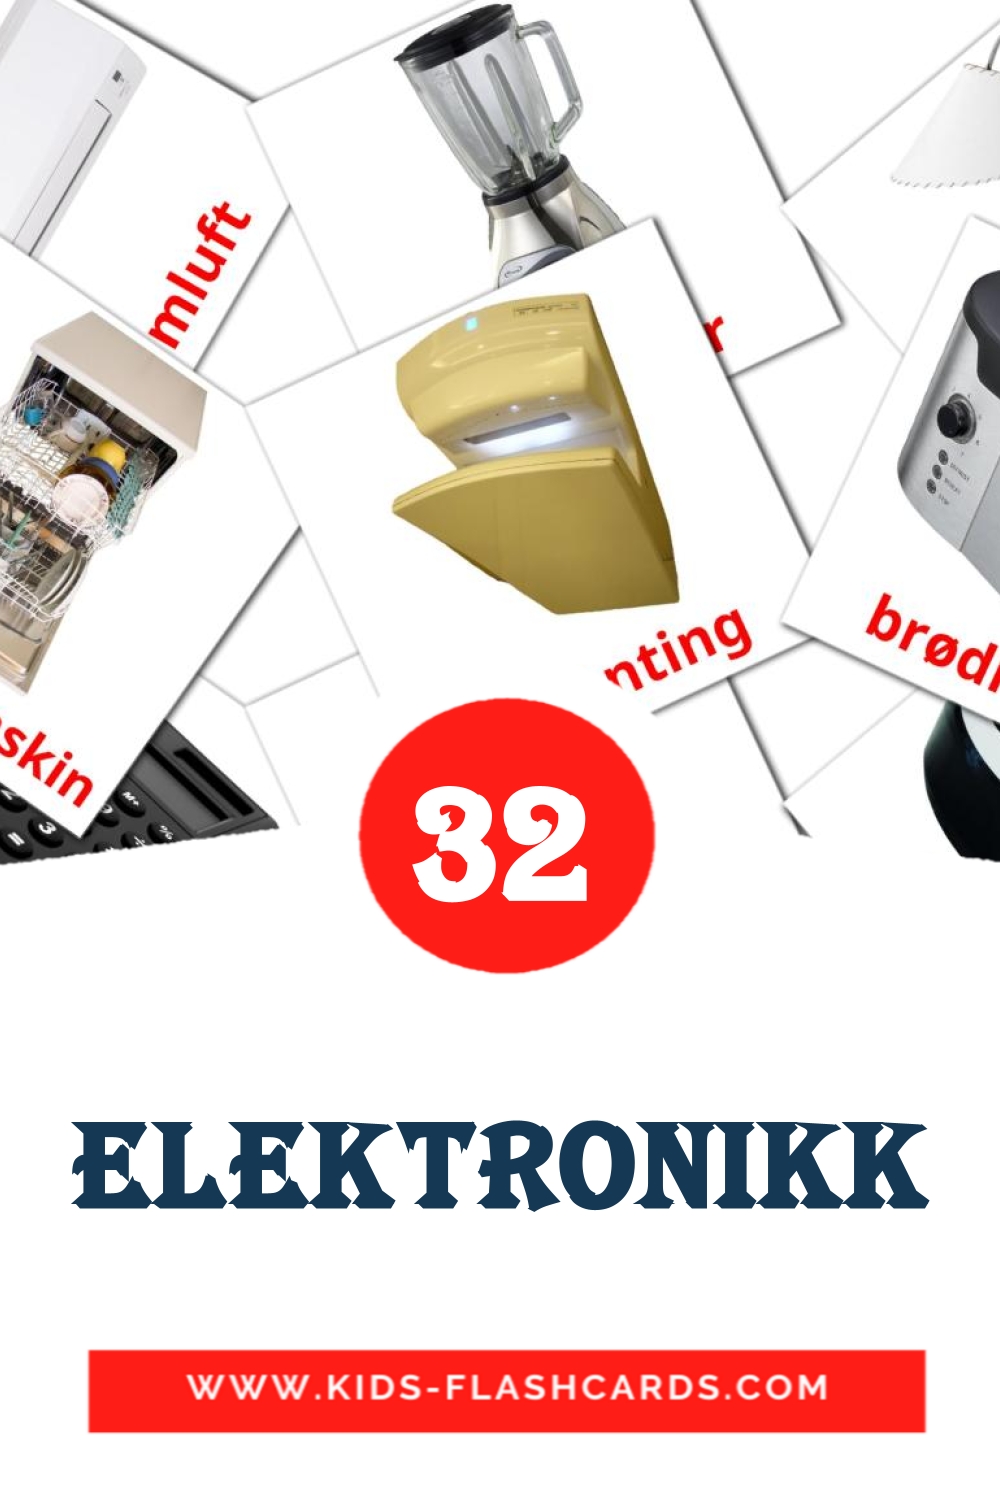 32 Elektronikk fotokaarten voor kleuters in het noors